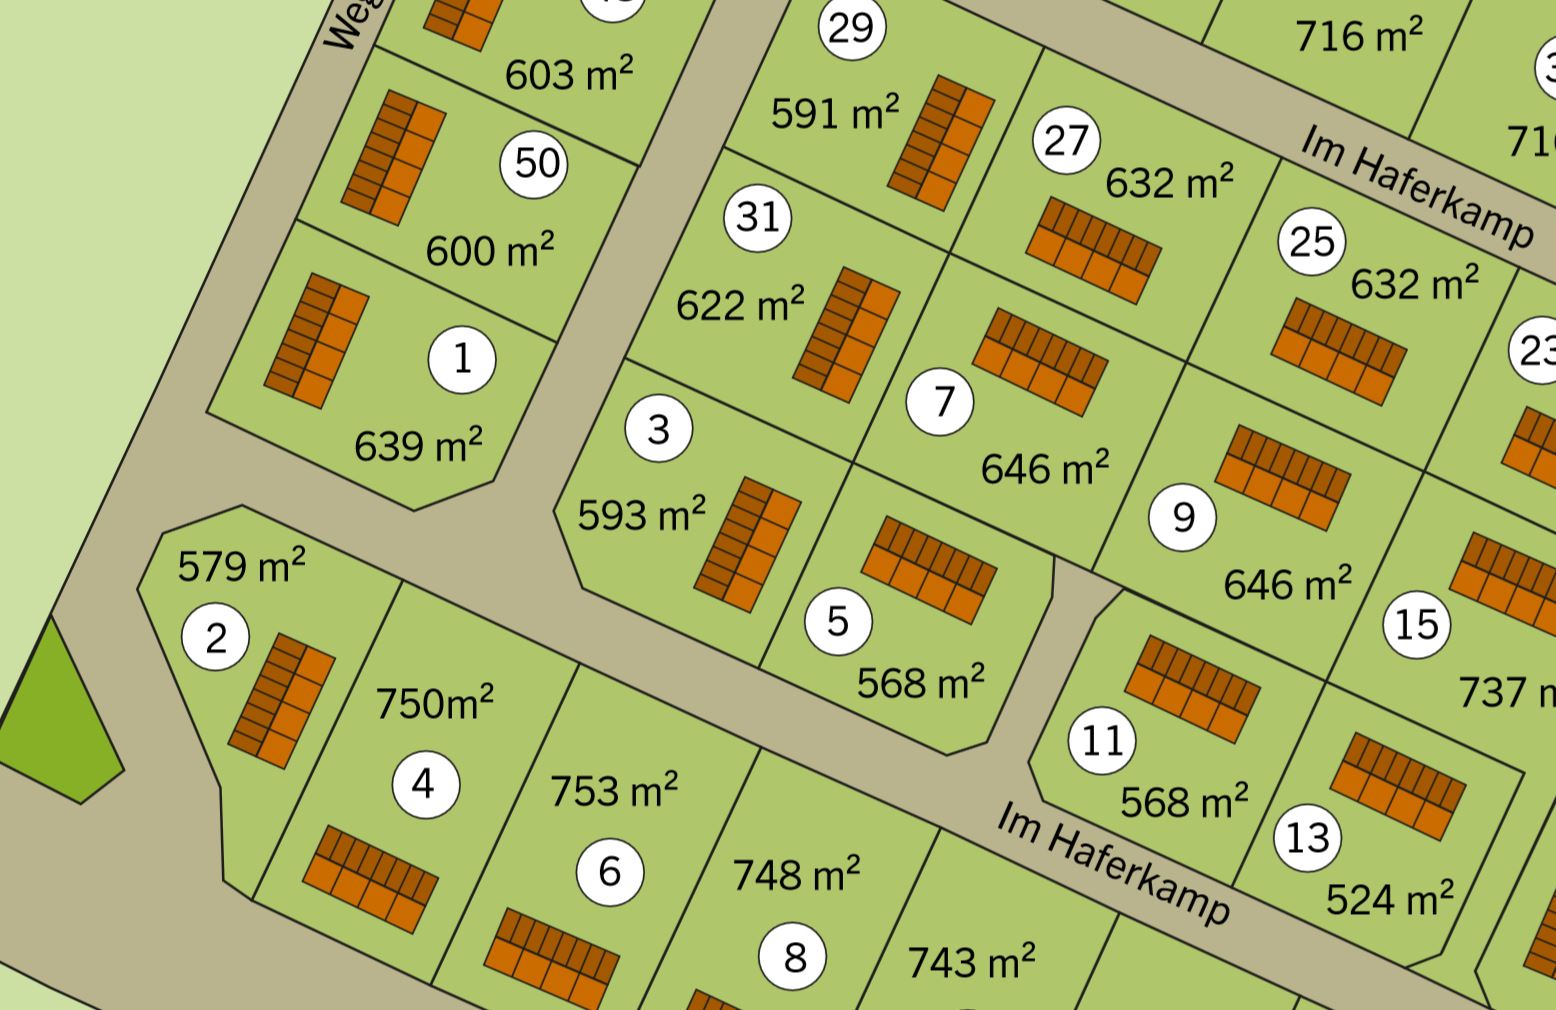 grundrissplanung-einfamilienhaus-an-suedhanglage-311381-10.JPG